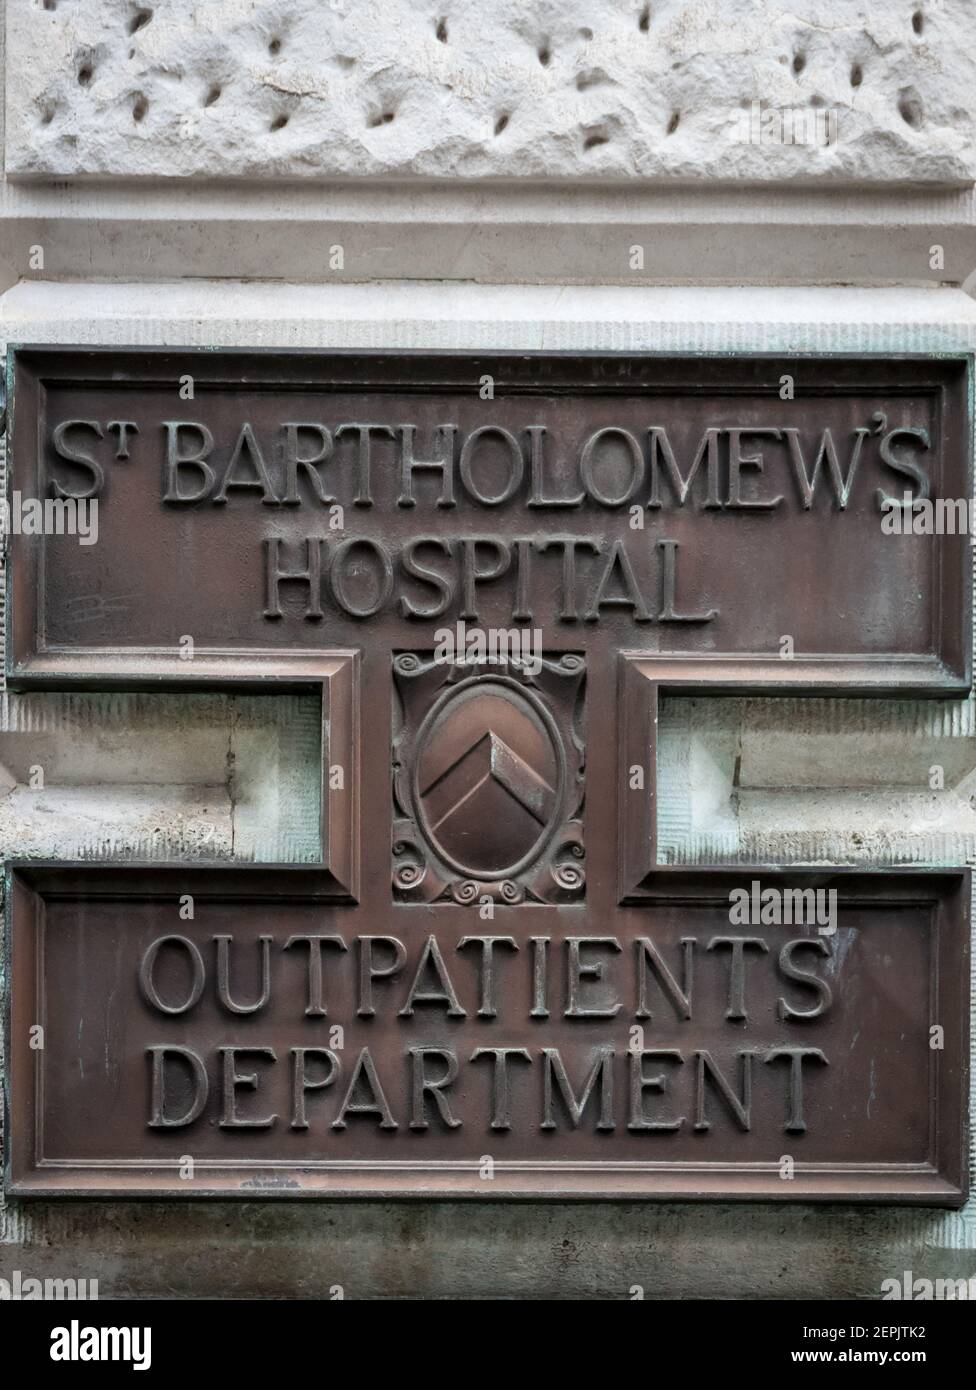 St Bartholomew's Hospital plaque, London Stock Photo